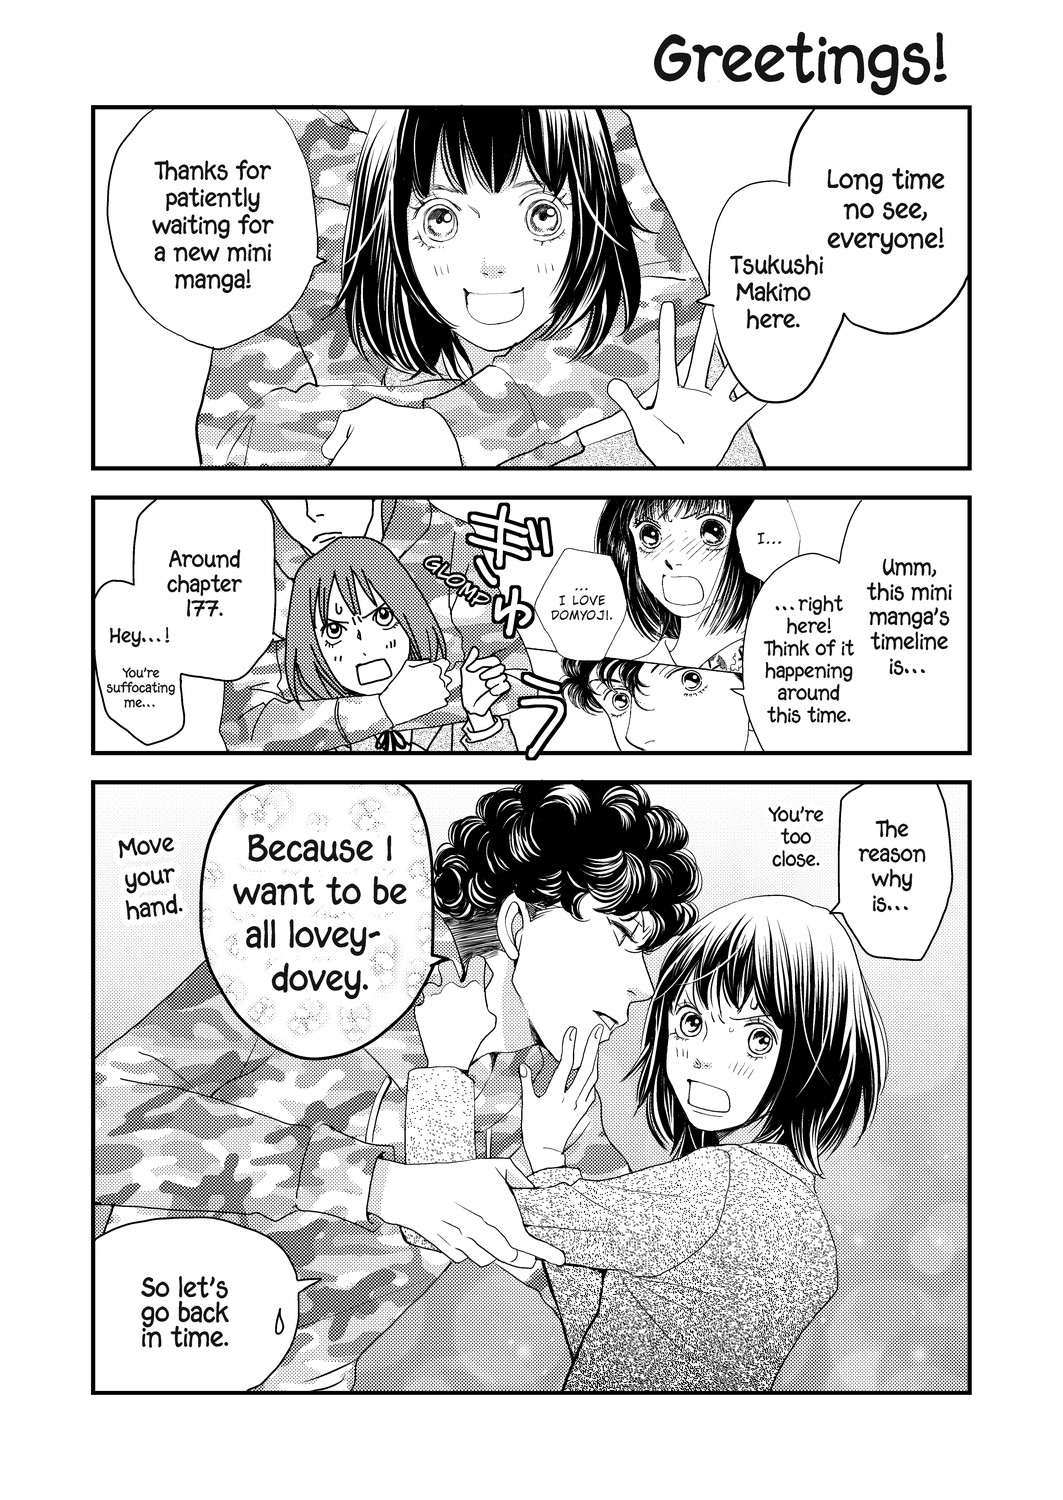 Boys Over Flowers Short Manga